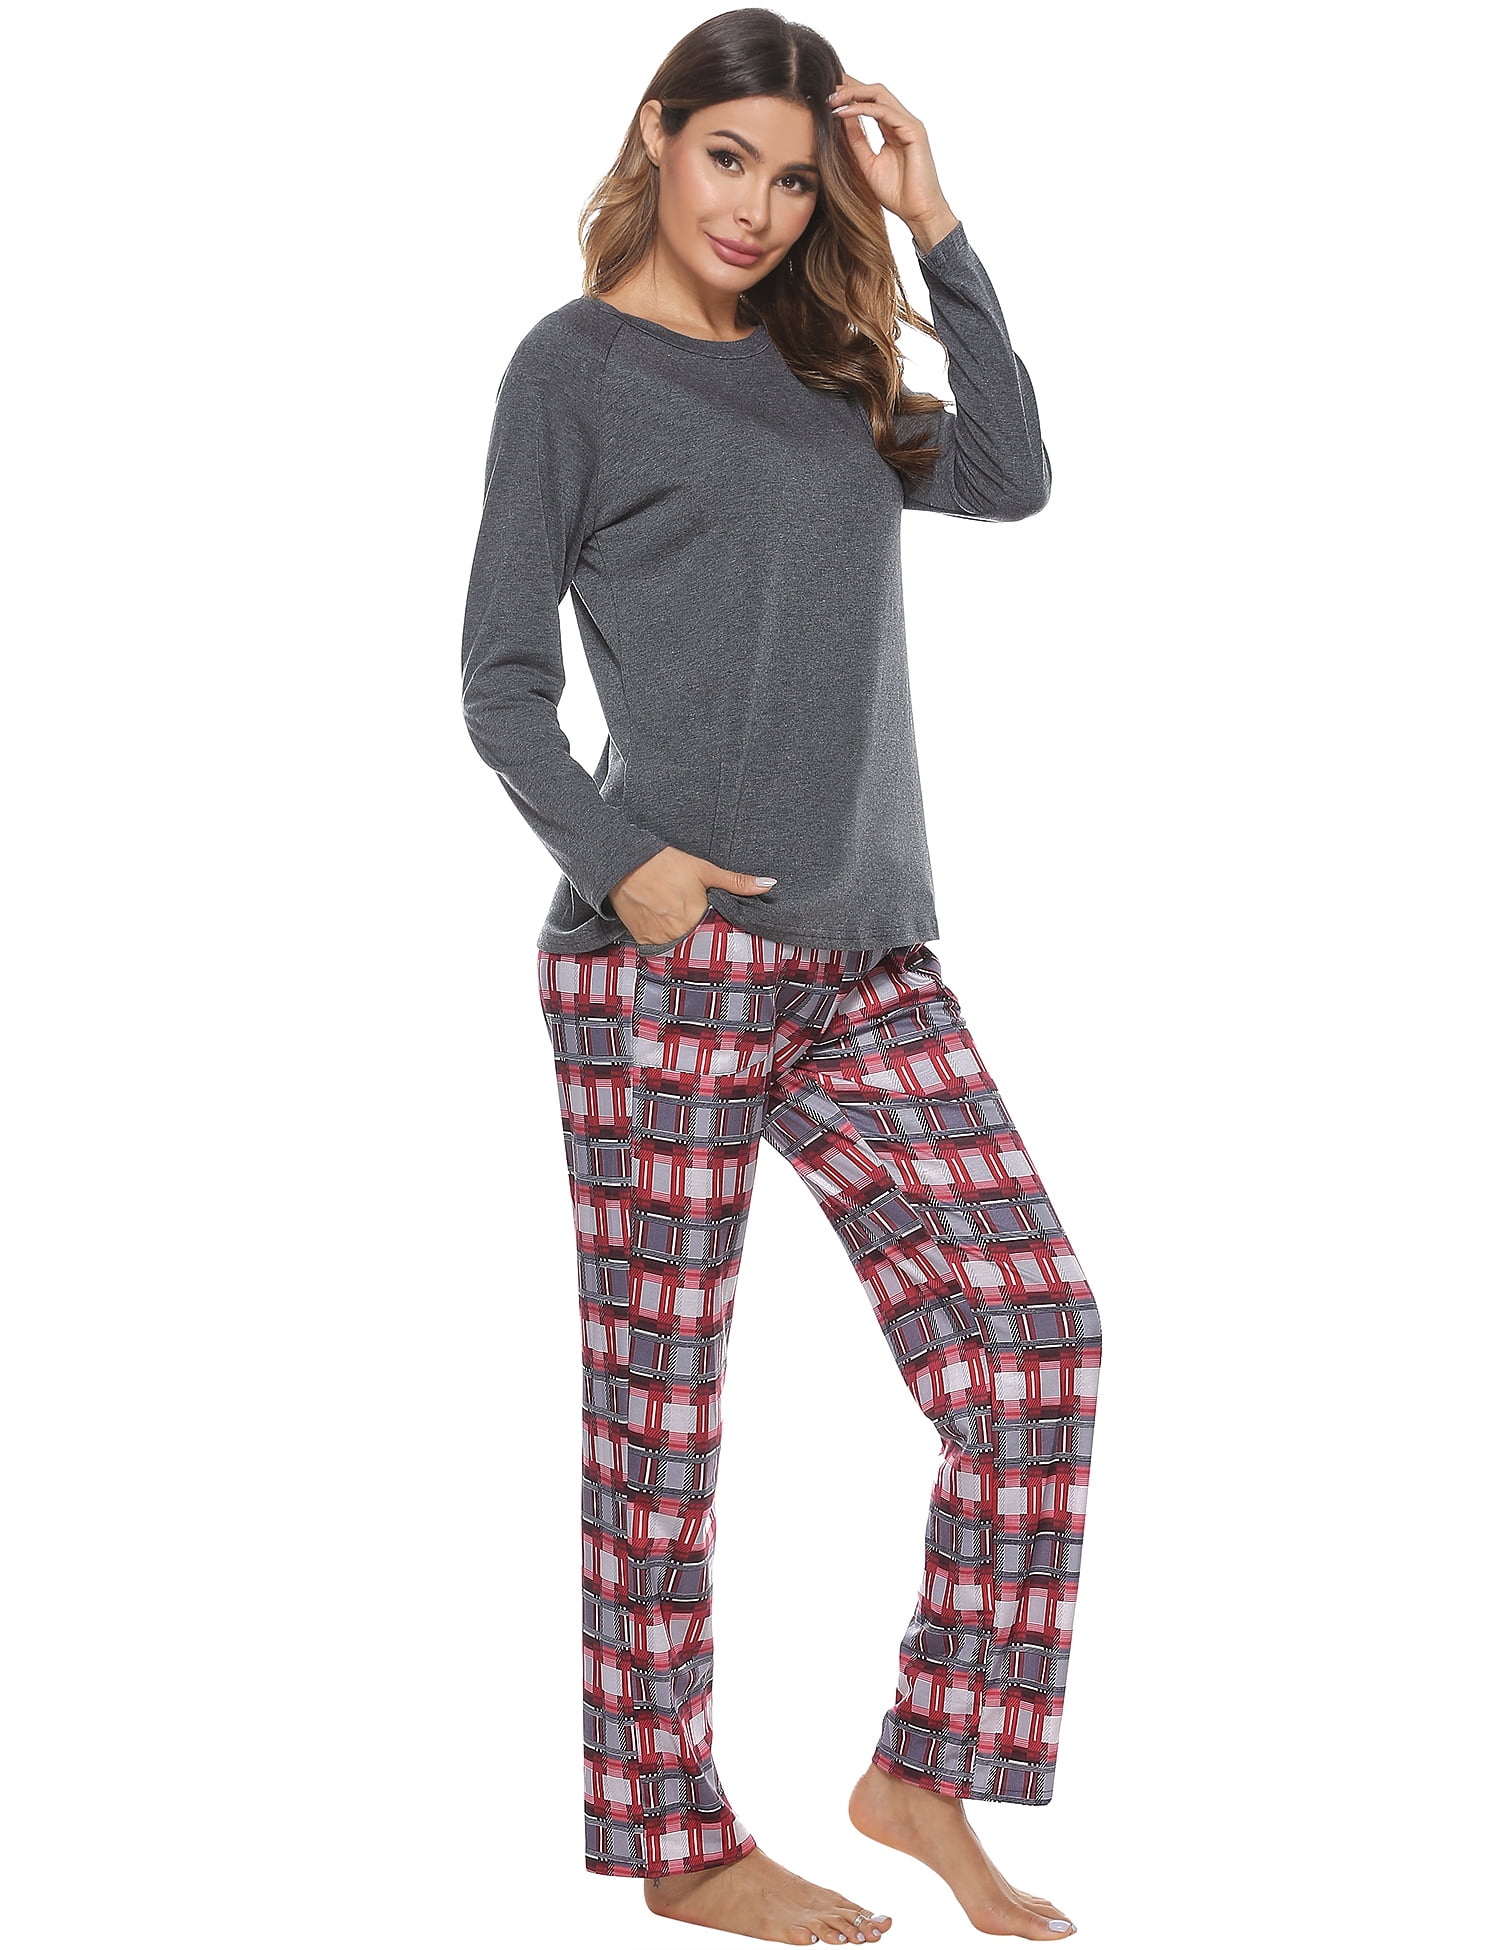 Ladies Pyjamas Set Printing Long Sleeve Loungewear Top and Pants Pjs Set Soft Nightwear Sleepwear Aibrou Women Pajamas 